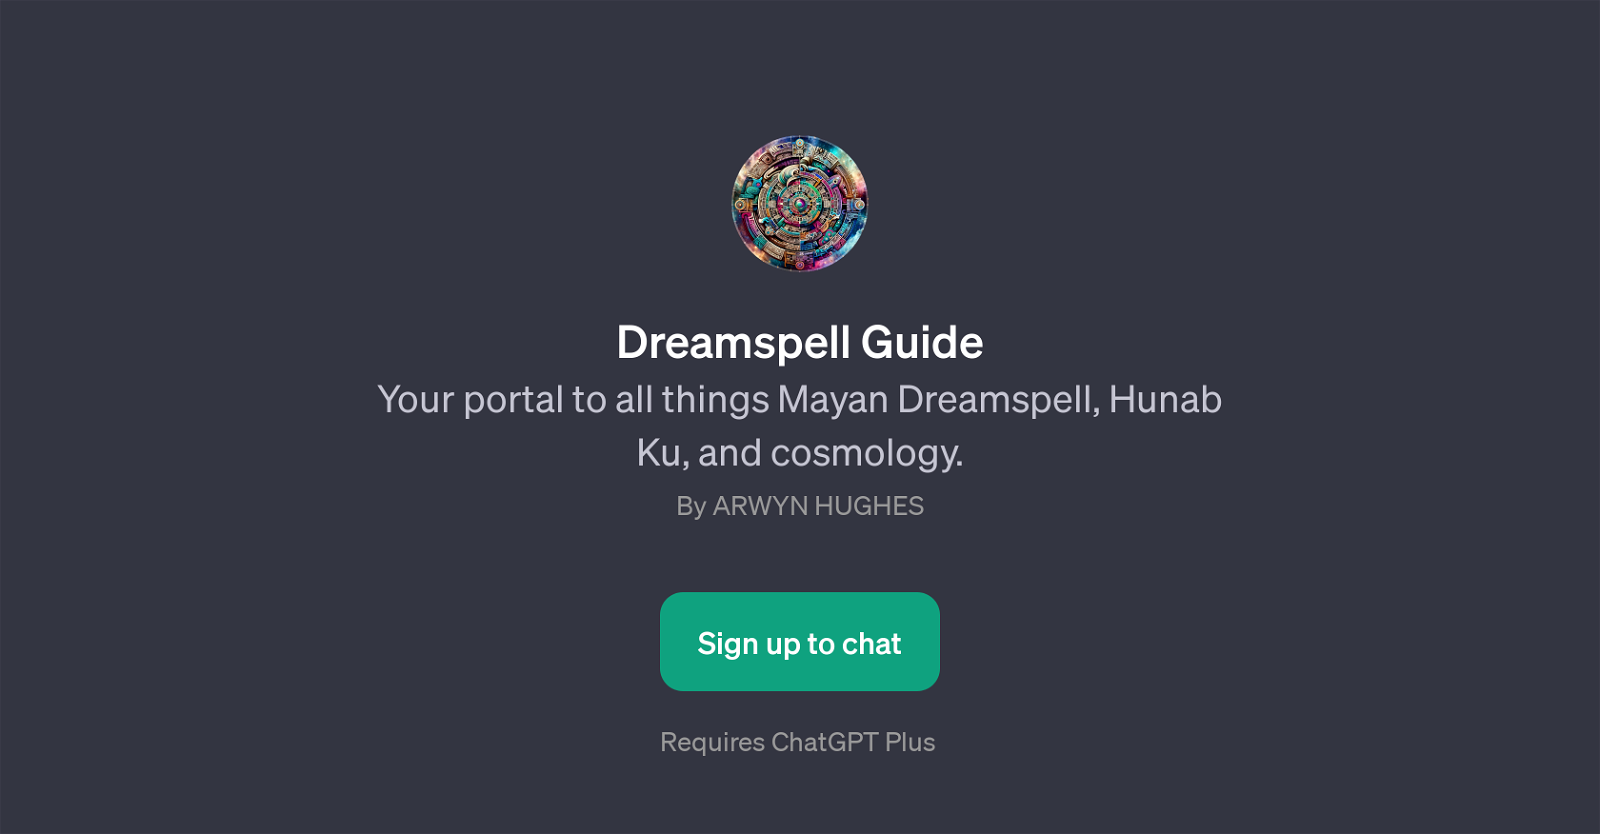 Dreamspell Guide website